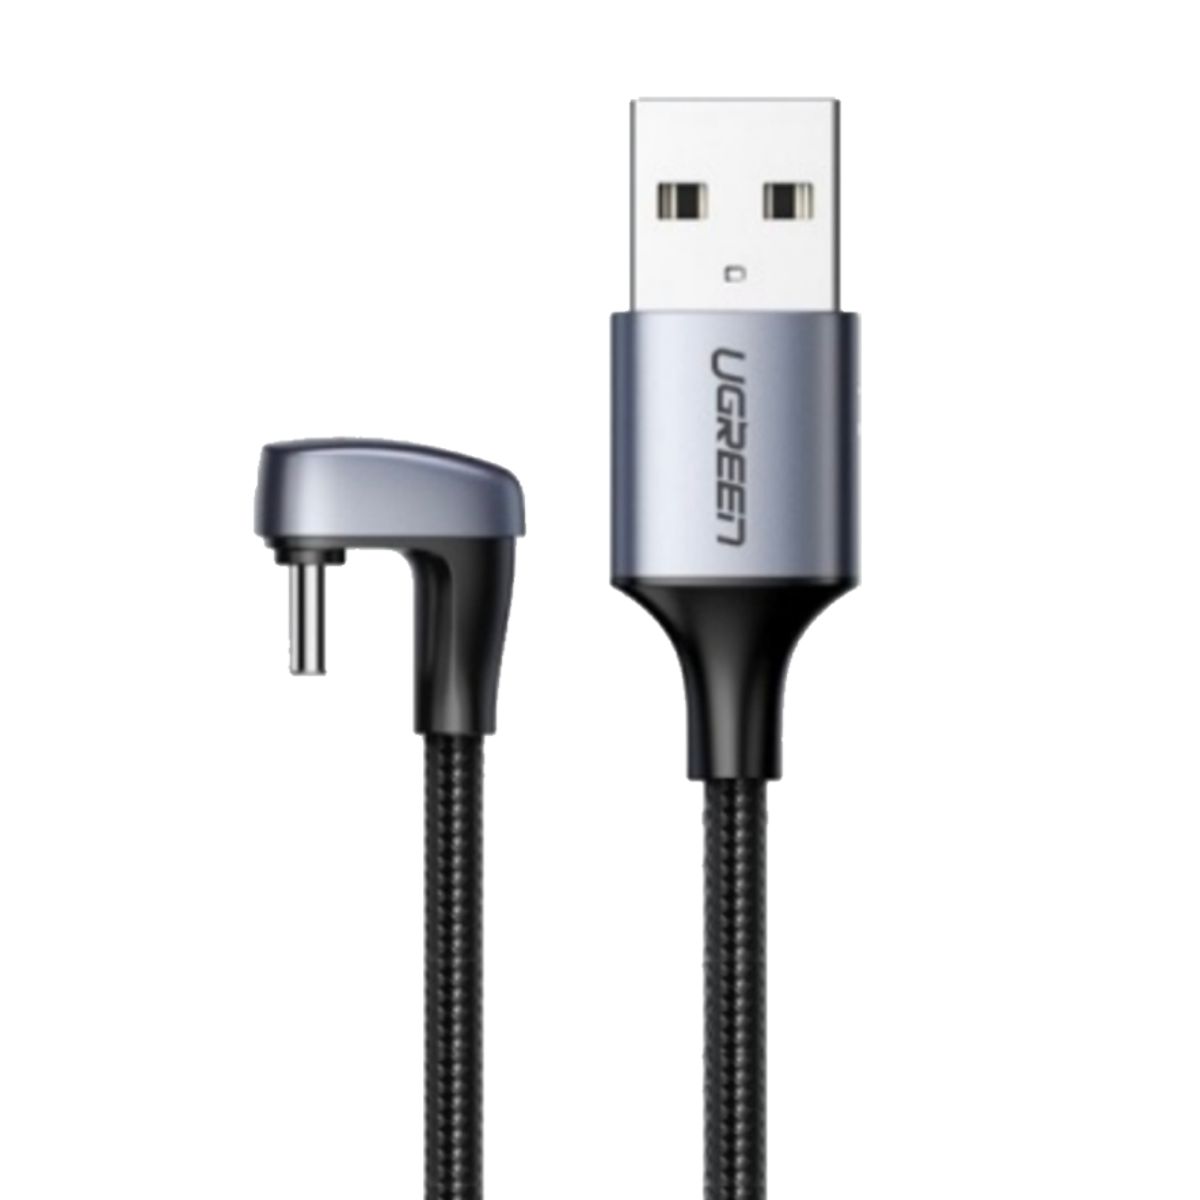 Cáp sạc 2m USB 2.0 sang USB type C Ugreen US311, 70315 màu đen, sạc nhanh công suất 18W